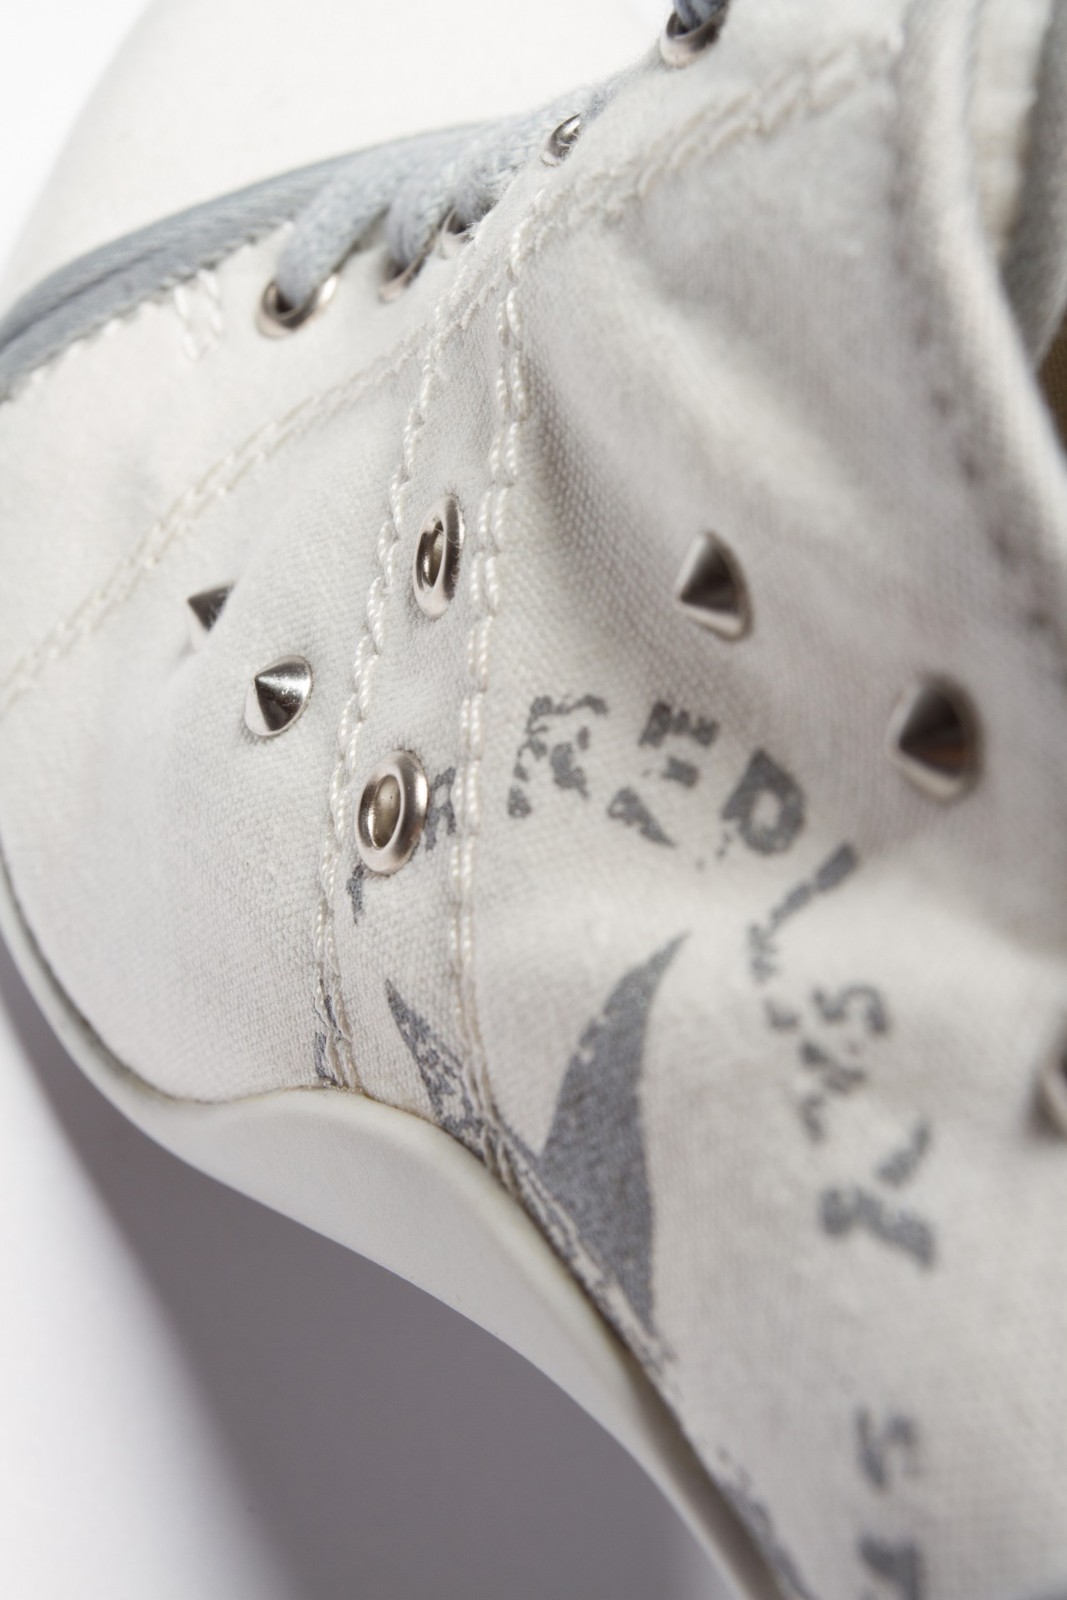 Replay szegecses fehér magassarkú cipő 2013.4.12 #39327 fotója